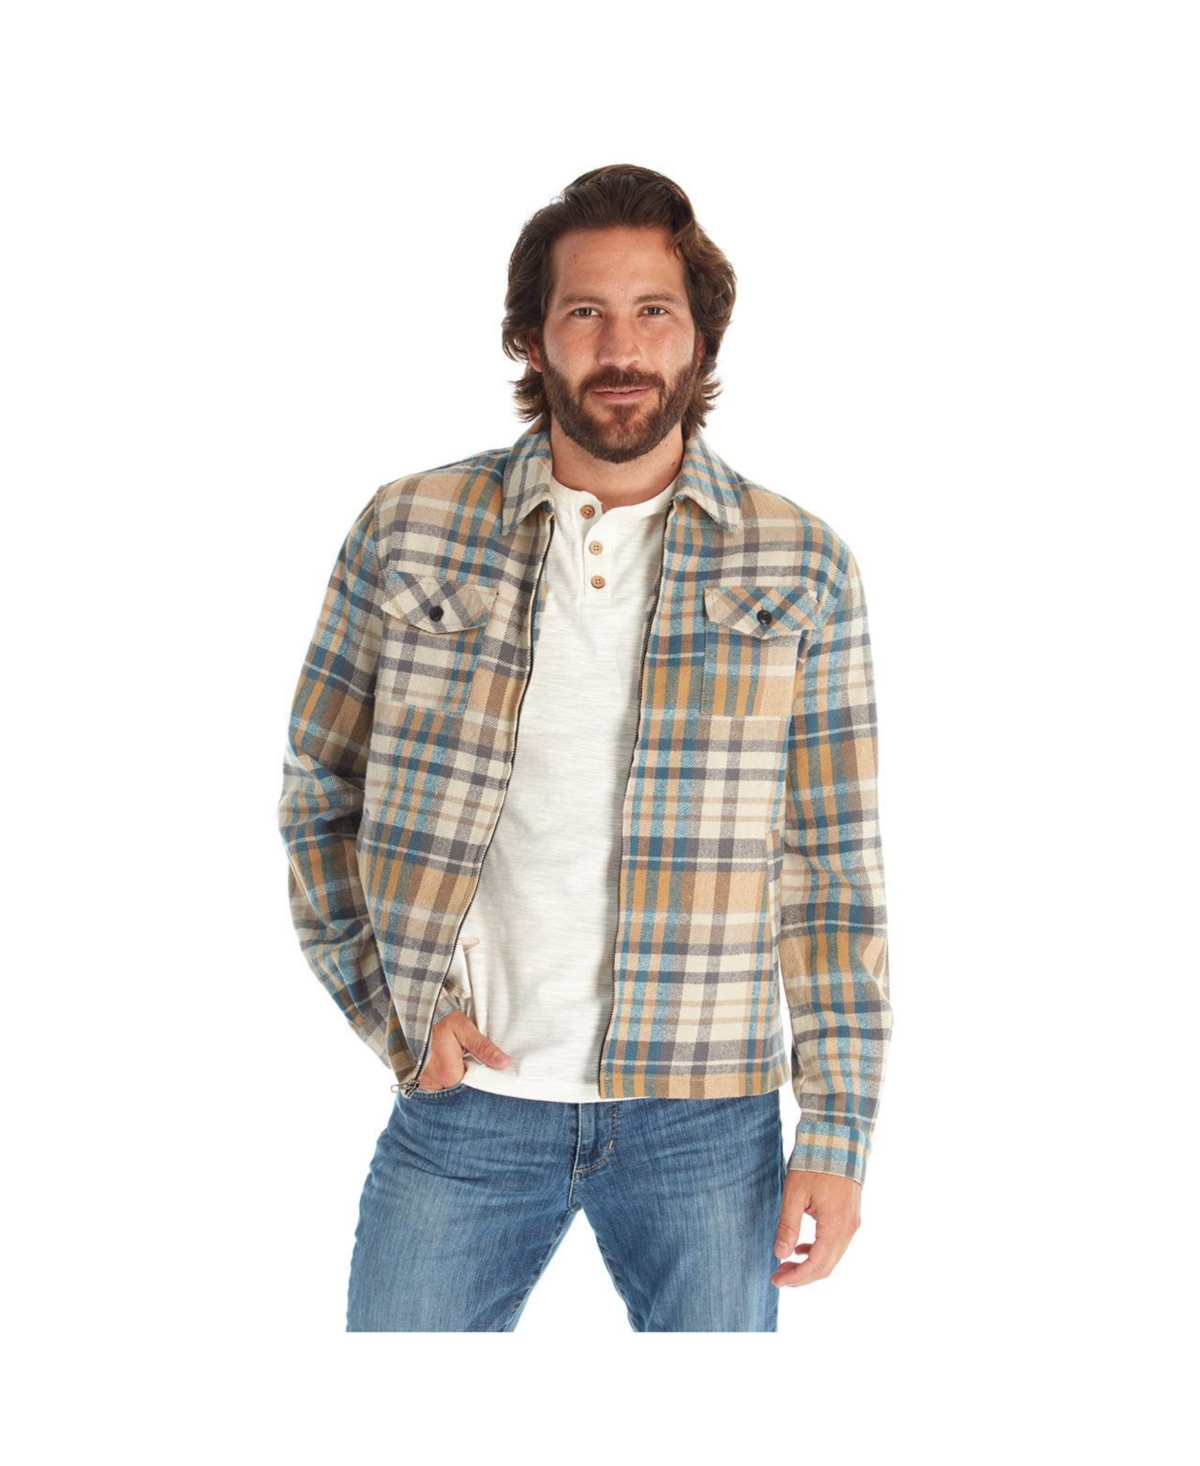 Clothing Men's Long Sleeve Plaid Zip Up Shirt Jacket - Cream